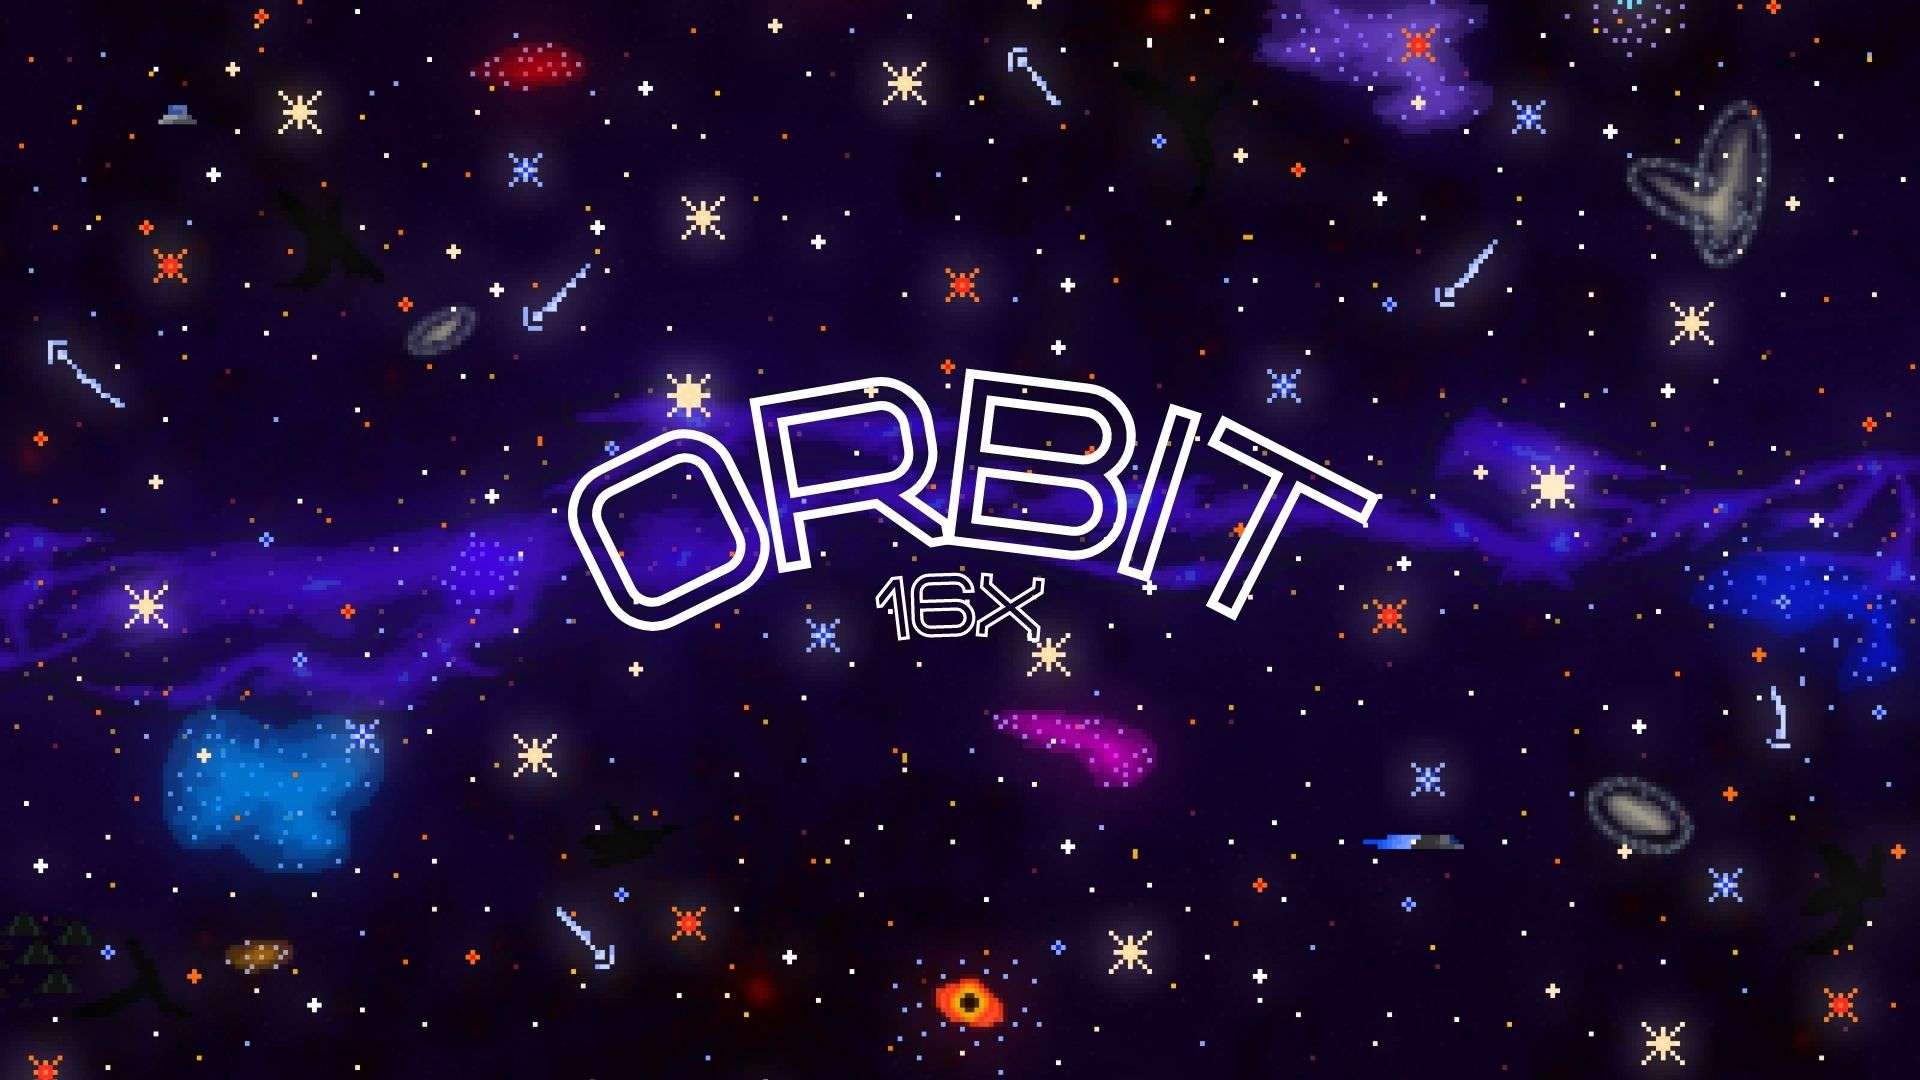 Orbit 🧑‍🚀🌍 16x by walker1905 on PvPRP